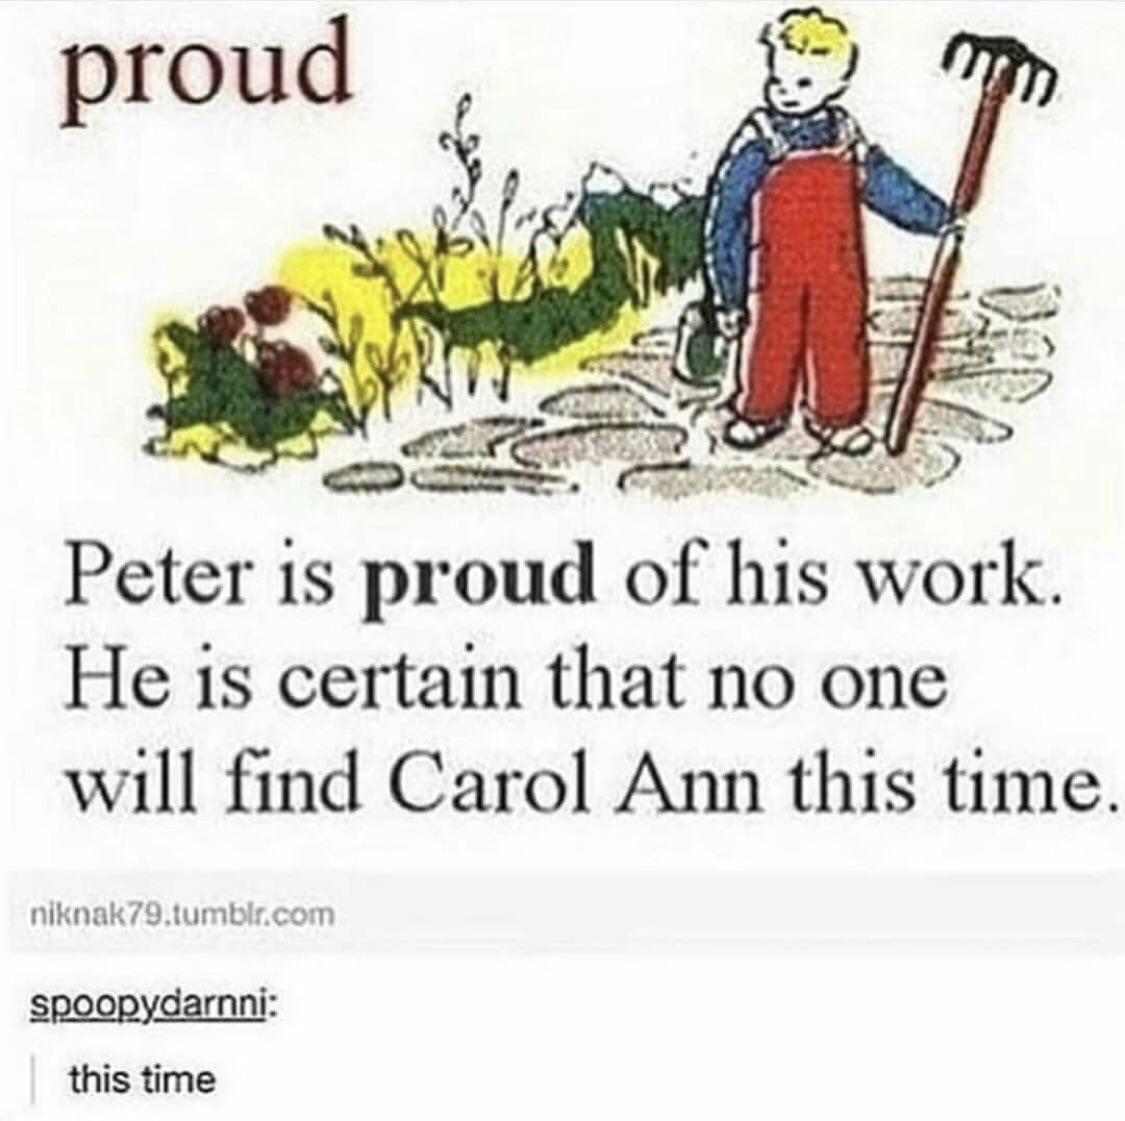 Good job Peter!